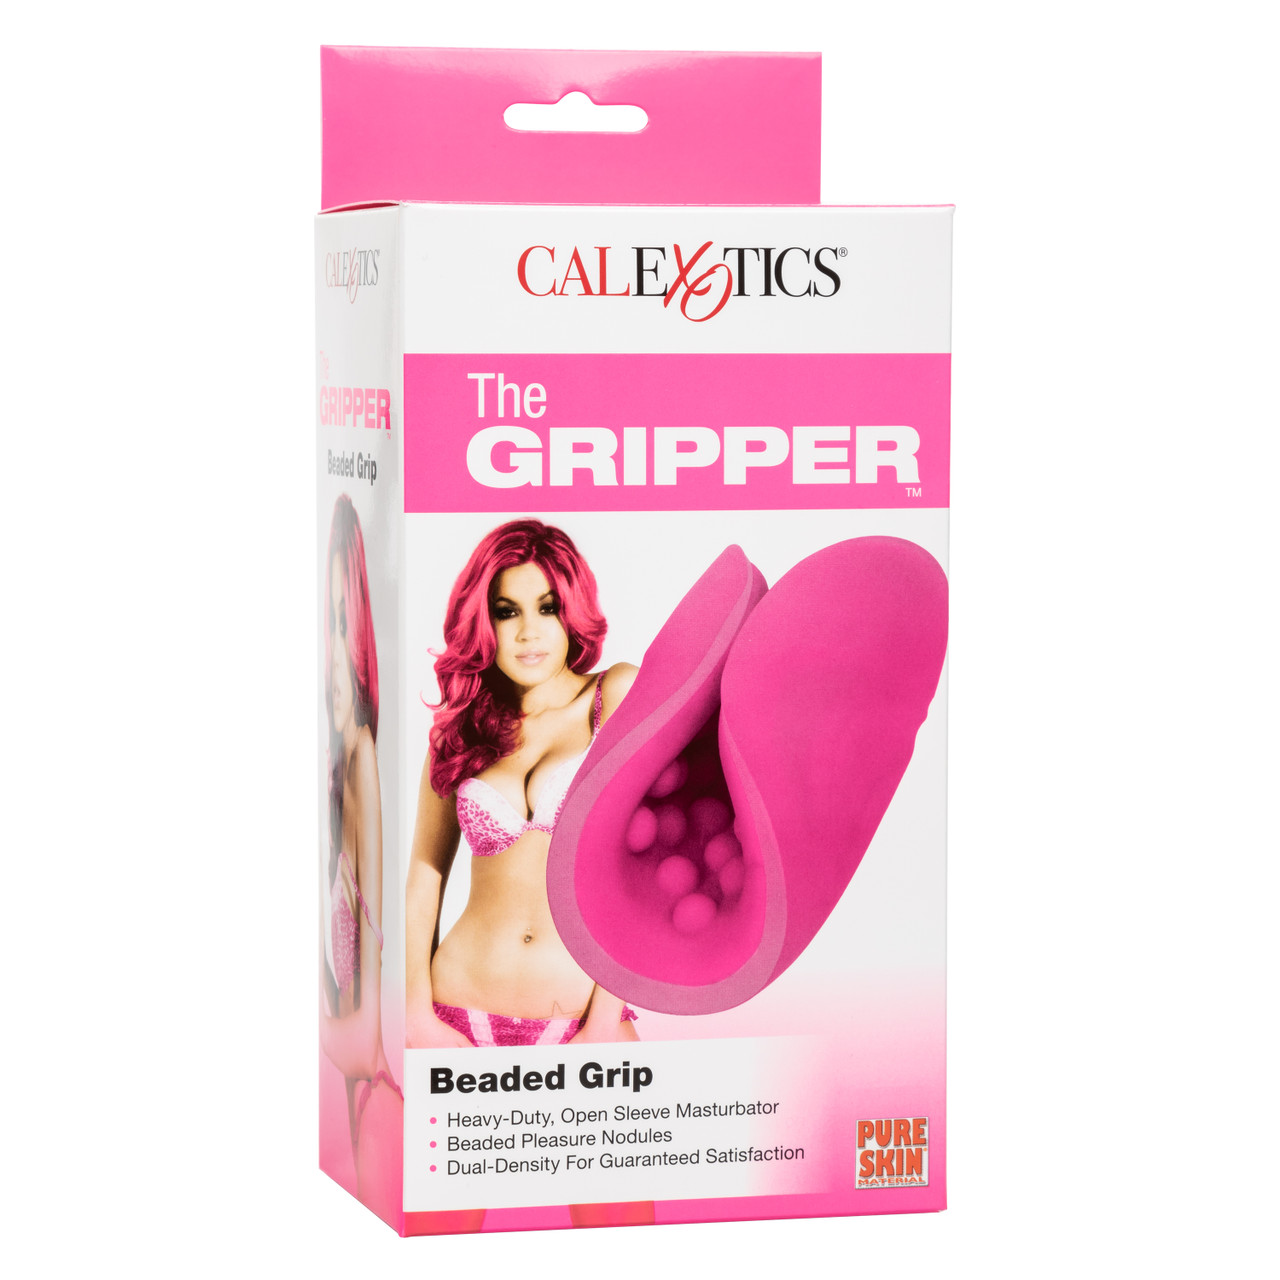 Рельефный мастурбатор CalExotics The Gripper Beaded Grip, розовый